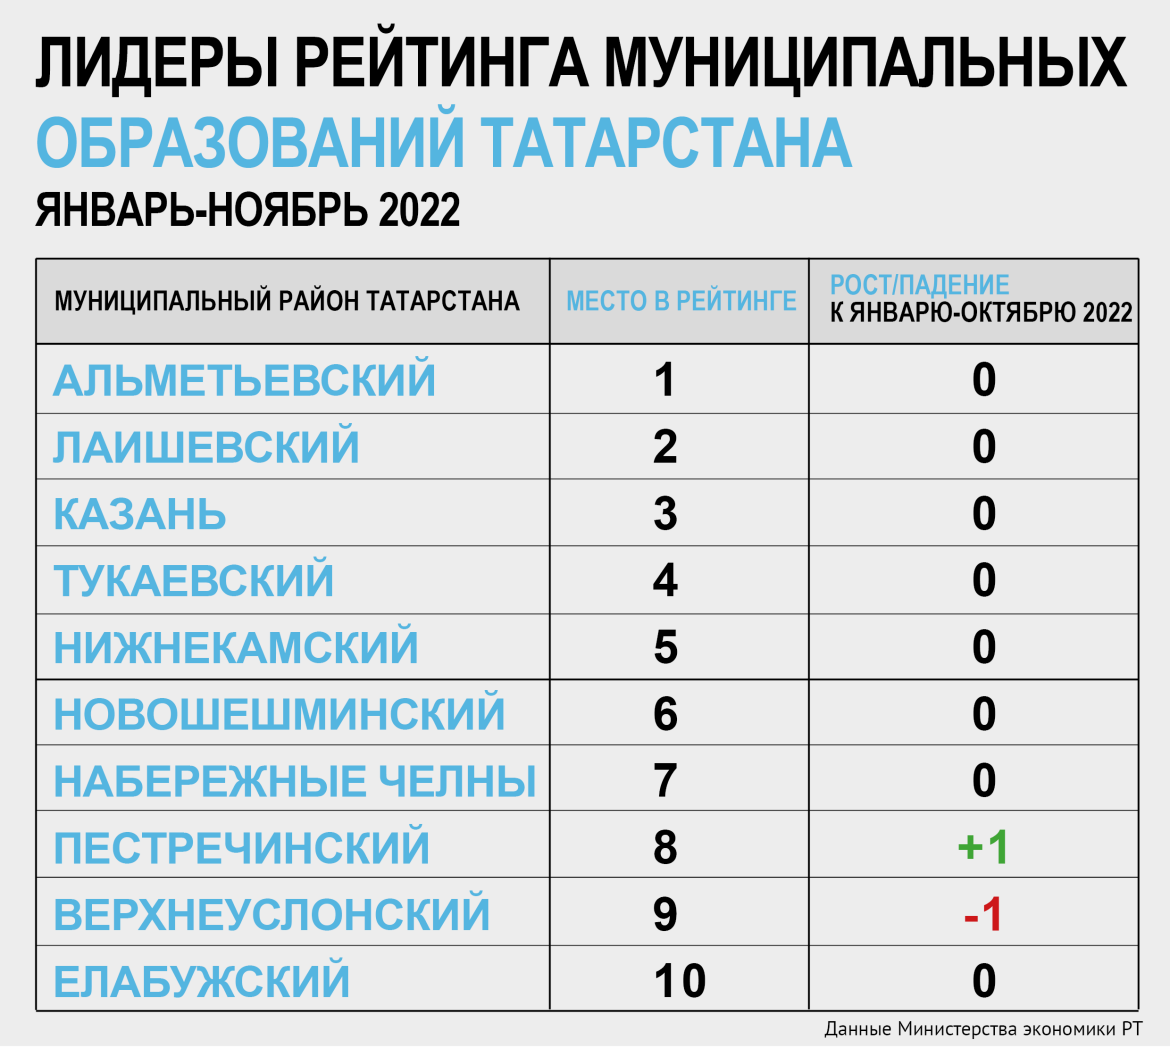 Рейтинг сетей 2023. Ркйтинг оайзенов. Социальный рейтинг. Htqnbyu CJW ctntq 2022 u. Рейтинг по районам Республики.